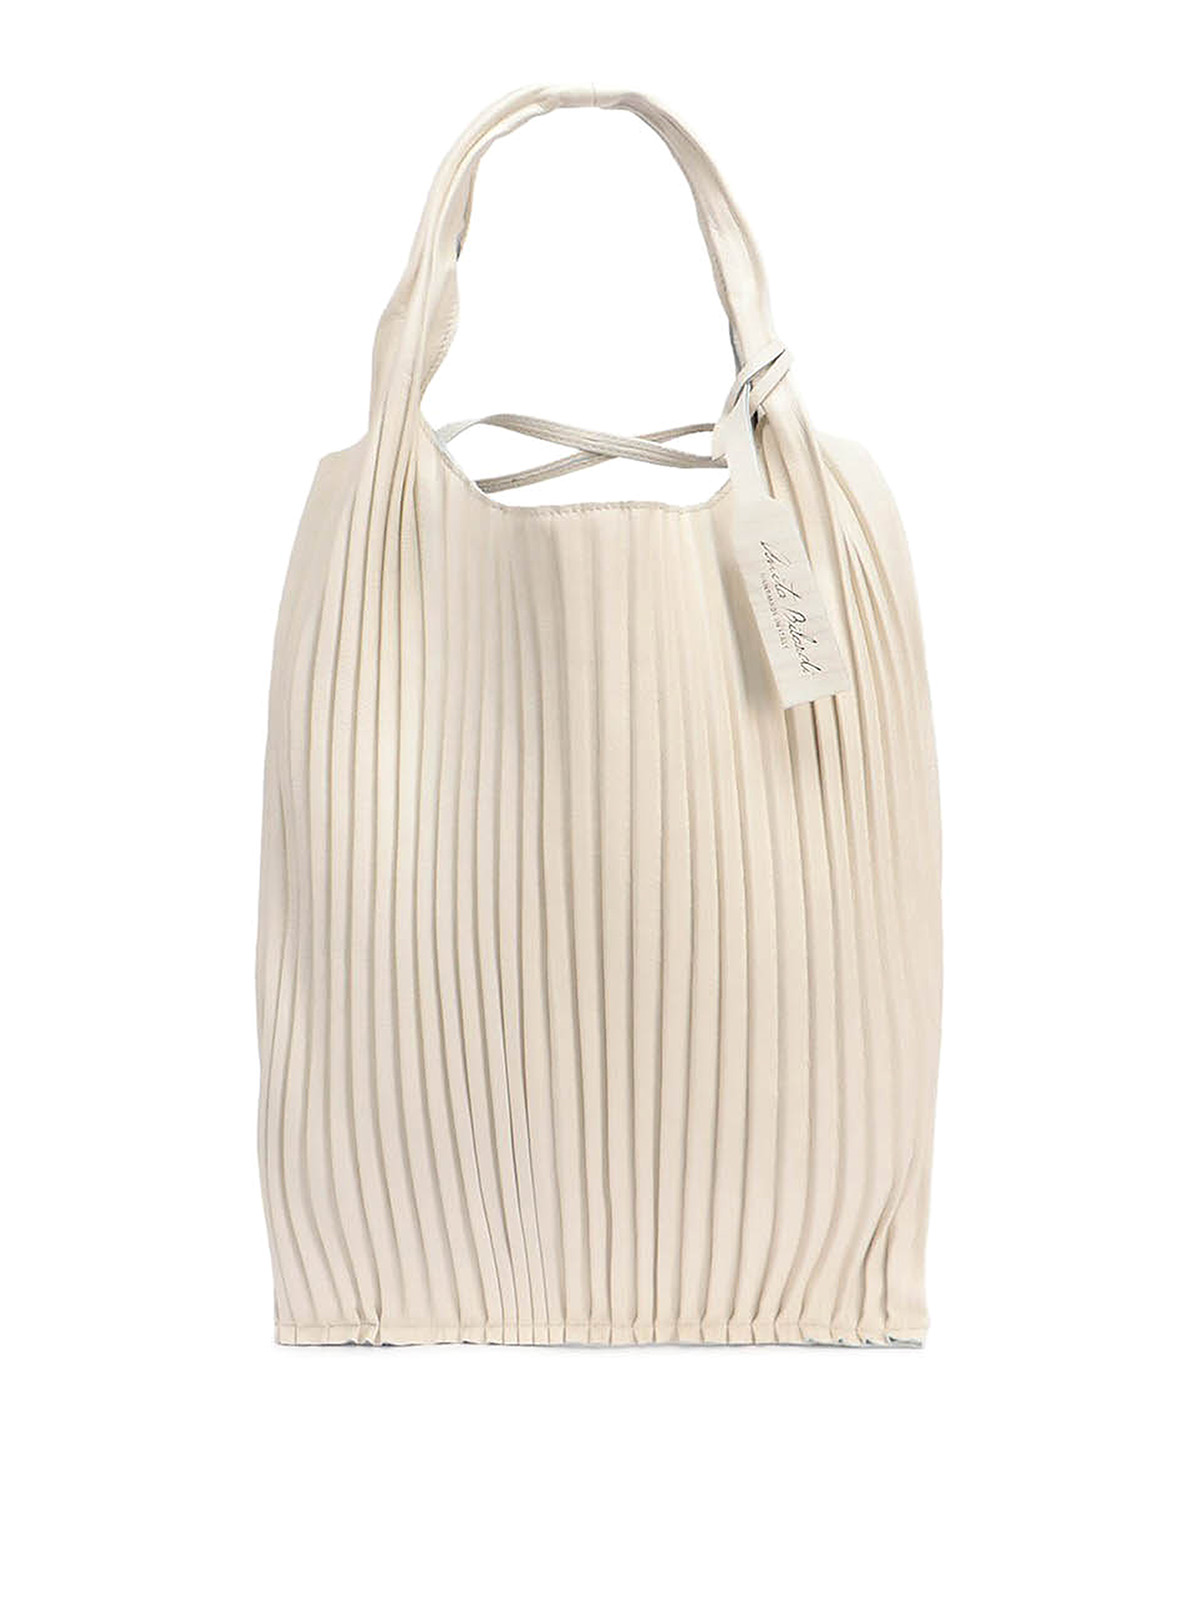 Shoulder bags Anita Bilardi - New Picasso pleated bag - 8054141730274